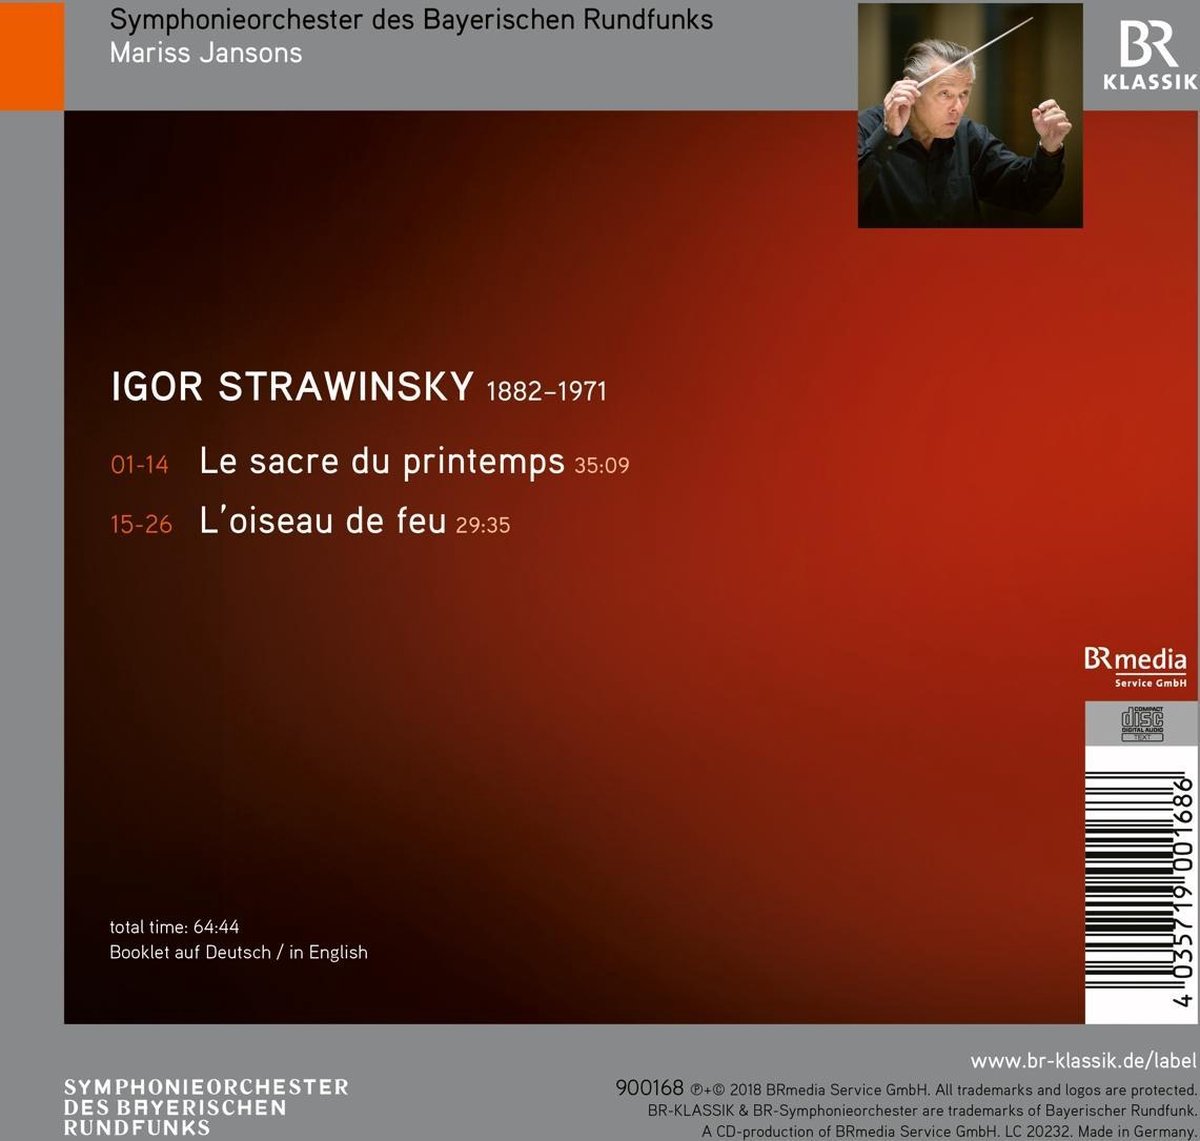 Le Sacre du Printemps - L\'Oiseau de Feu | Igor Stravinsky, Symphonieorchester des Bayerischen Rundfunks, Mariss Jansons